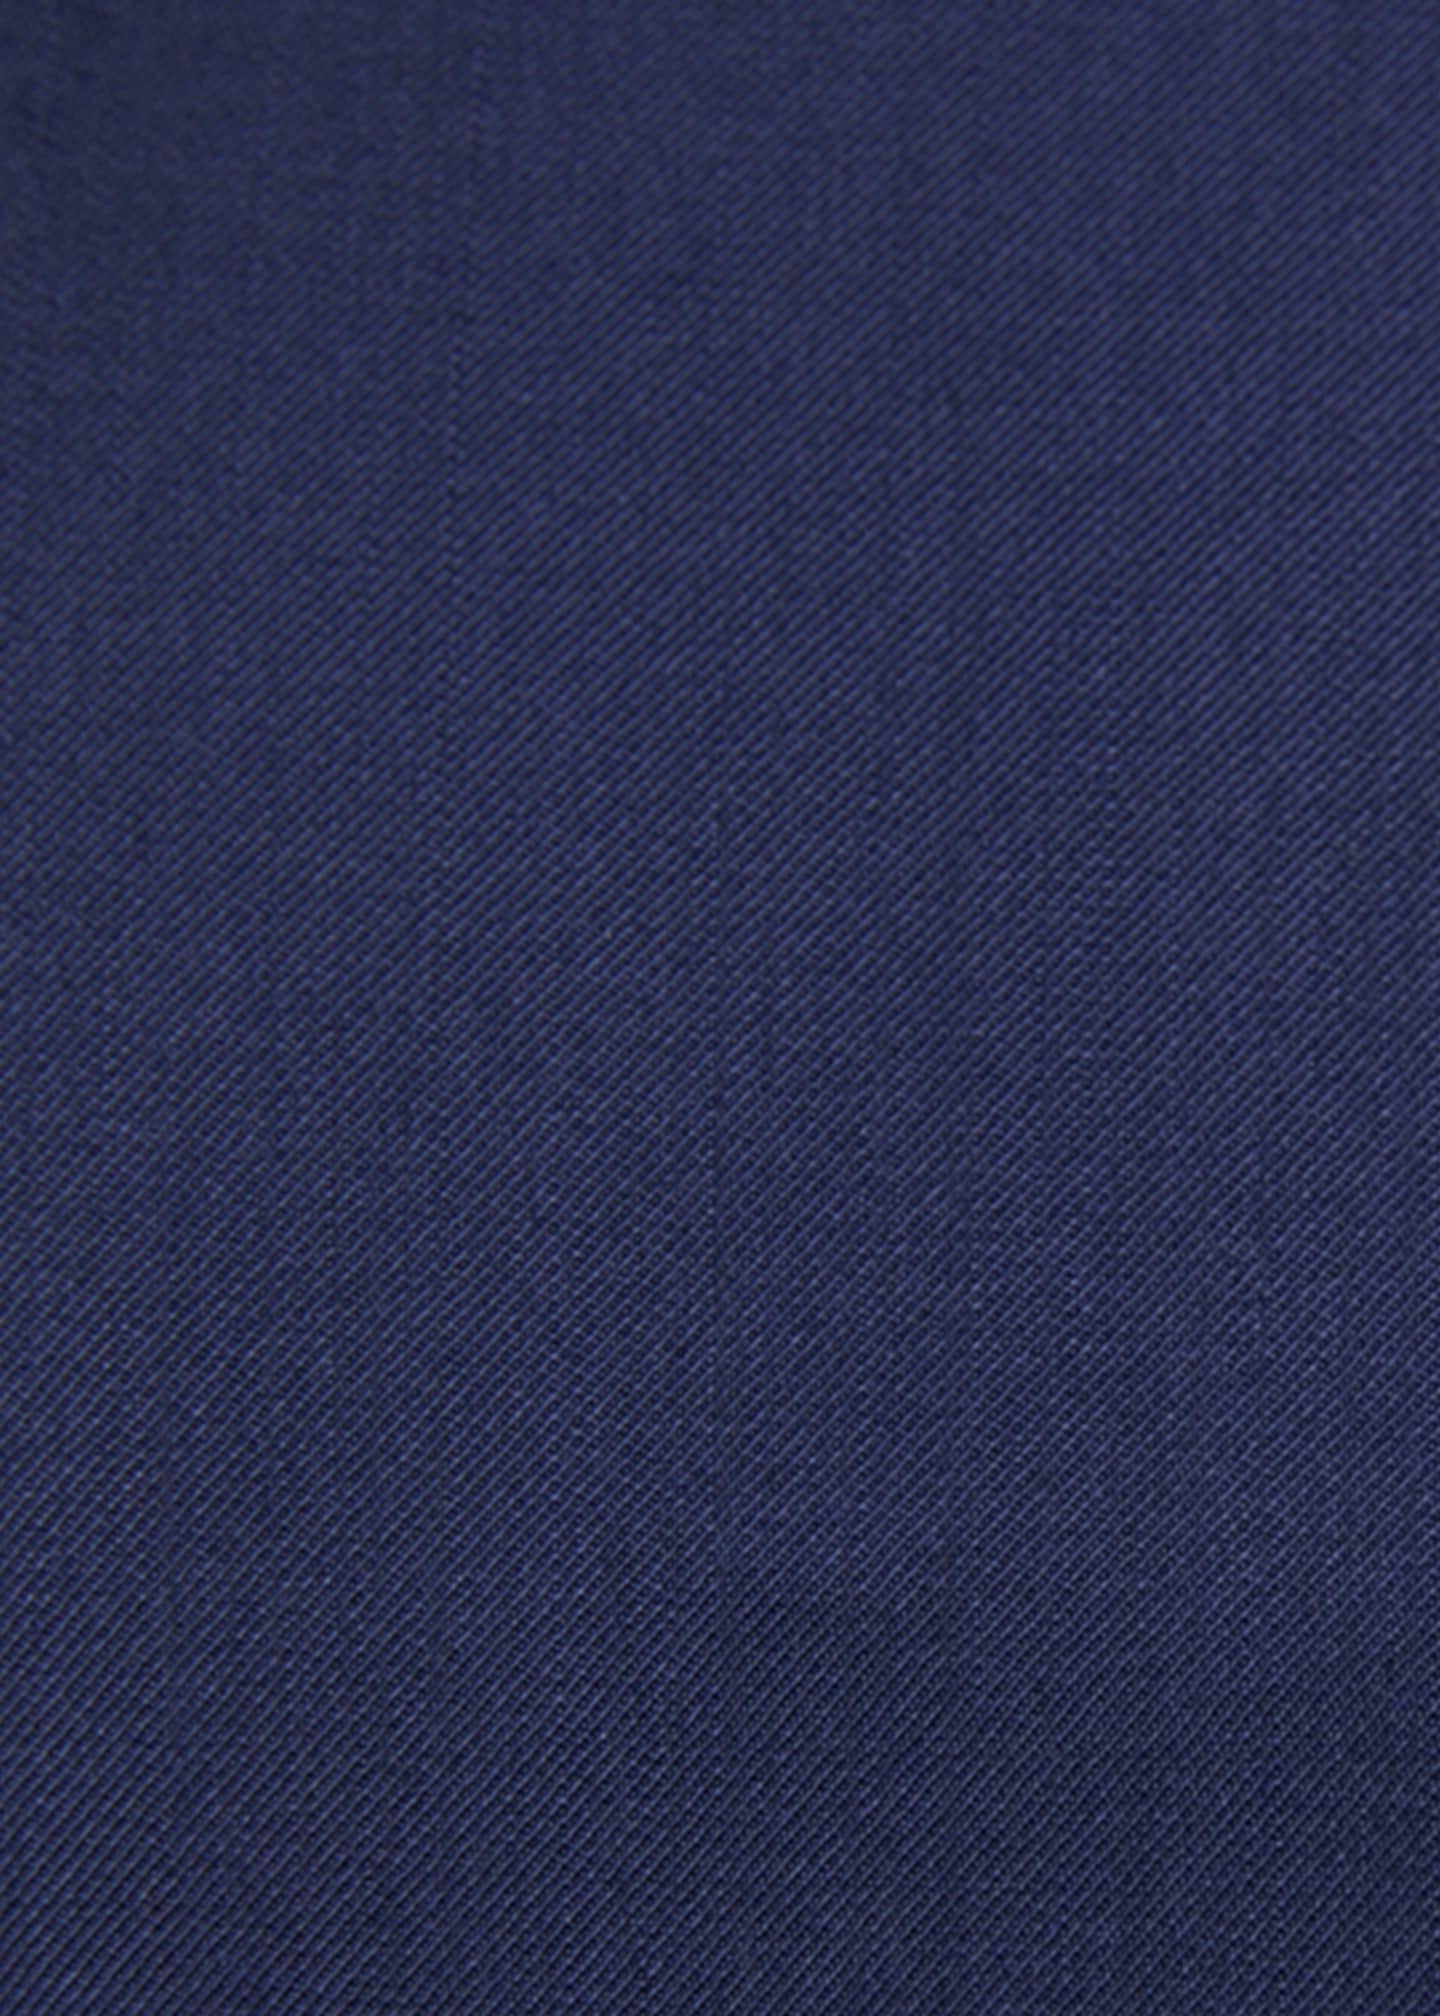 Ralph Lauren Purple Label Men's Gregory Hand-Tailored Wool Serge Blazer ...